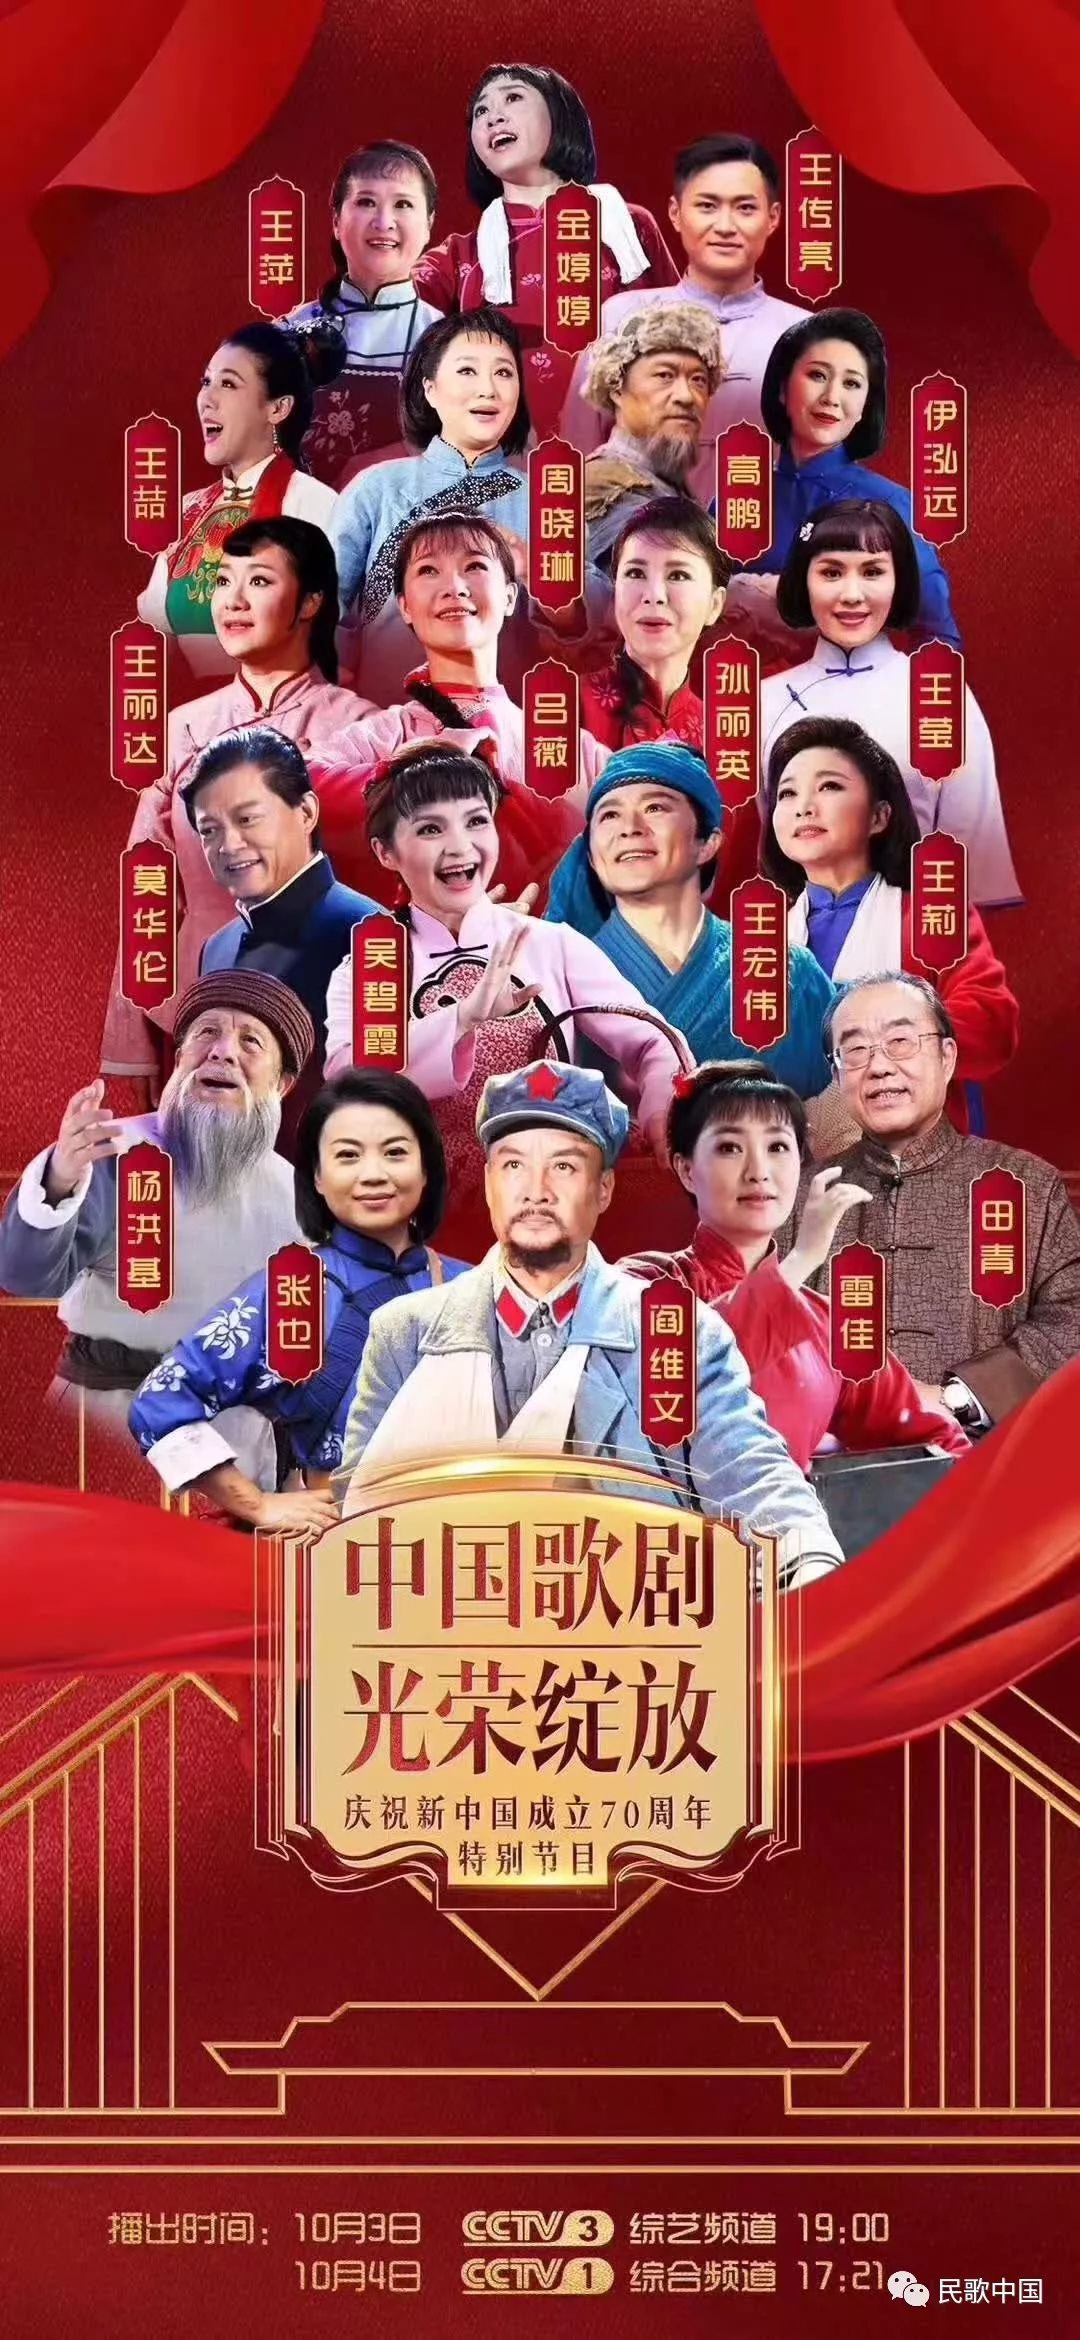 中国歌剧光荣绽放前所未有的一次集中呈现汇聚中国歌剧表演的中坚力量